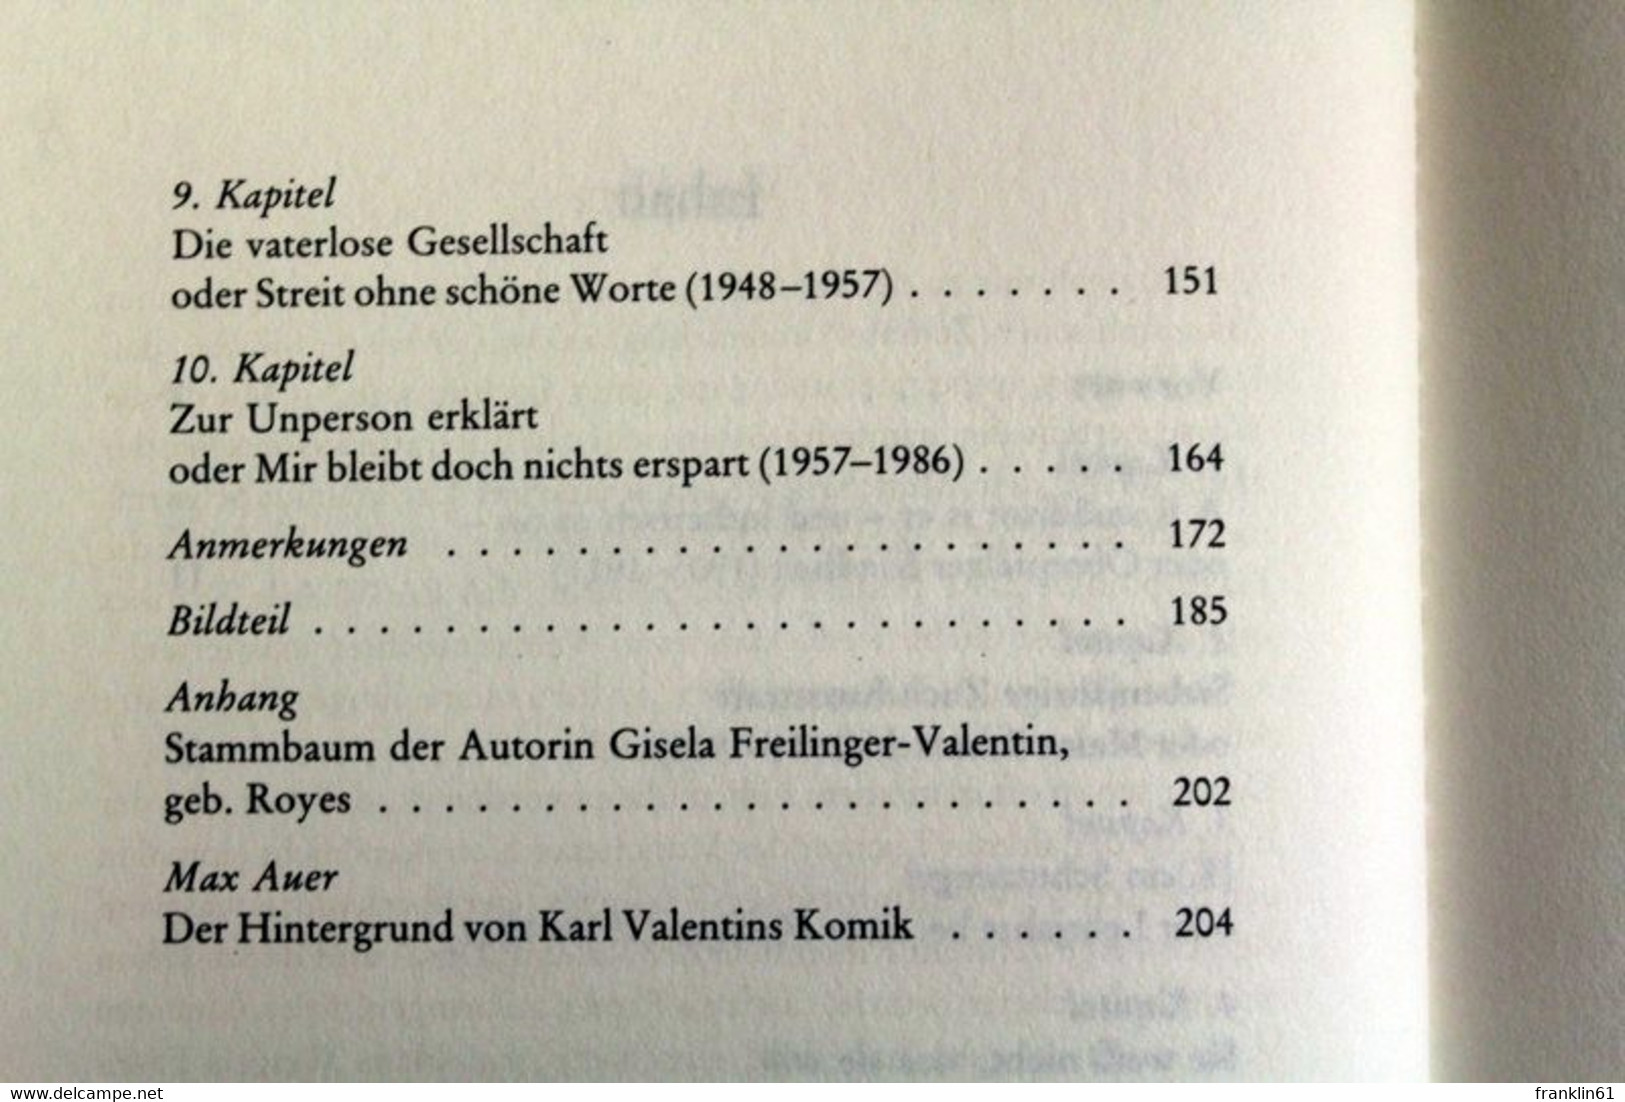 Karl Valentins Pechmarie : eine Tochter erinnert sich.